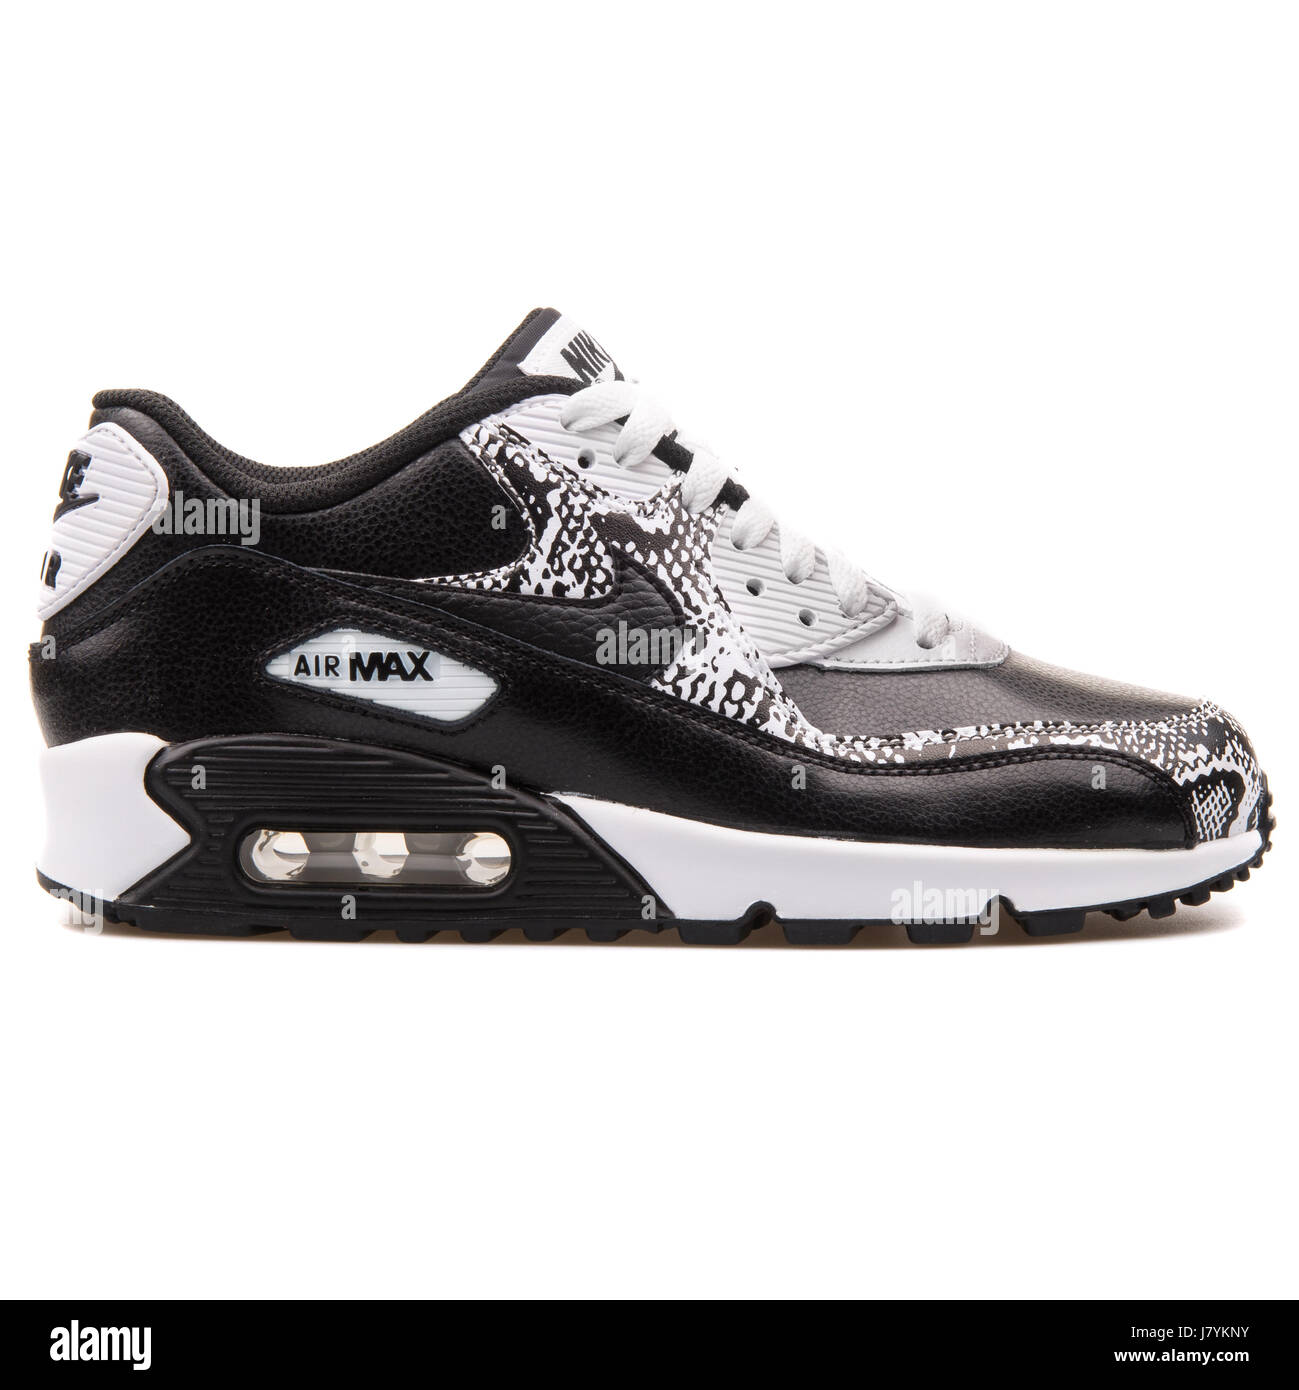 Nike Air Max 90 Premium LTR (GS) en blanco negro de jóvenes ejecutan Sneakers - 724871-001 Fotografía de stock - Alamy